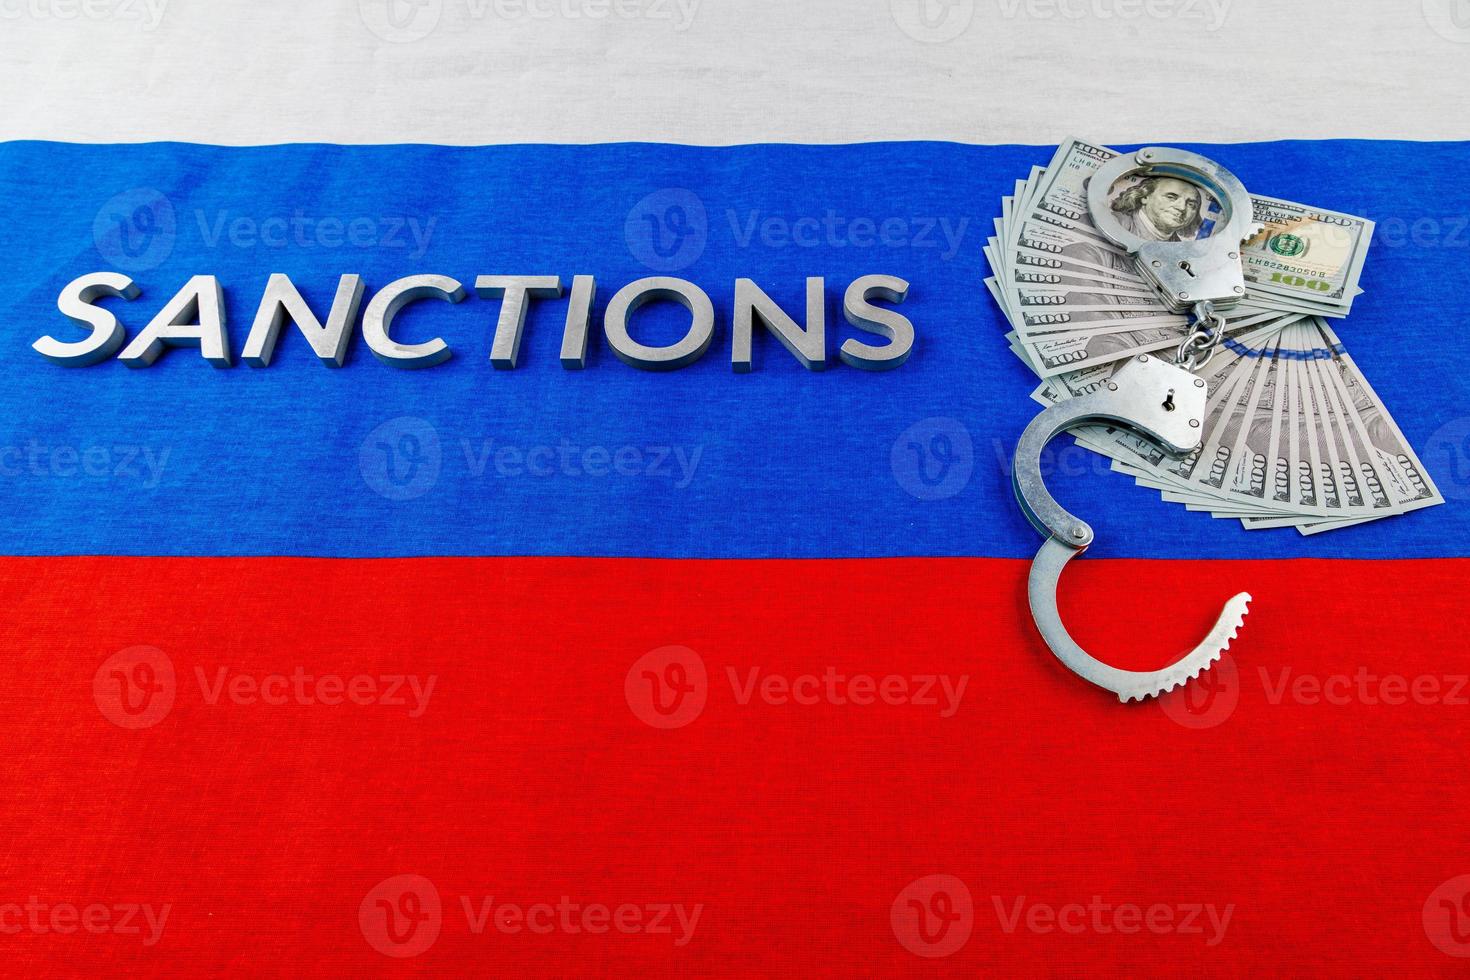 le mot sanctions posées avec des lettres en métal argenté sur le drapeau tricolore russe près des billets en dollars et des menottes en perspective linéaire photo